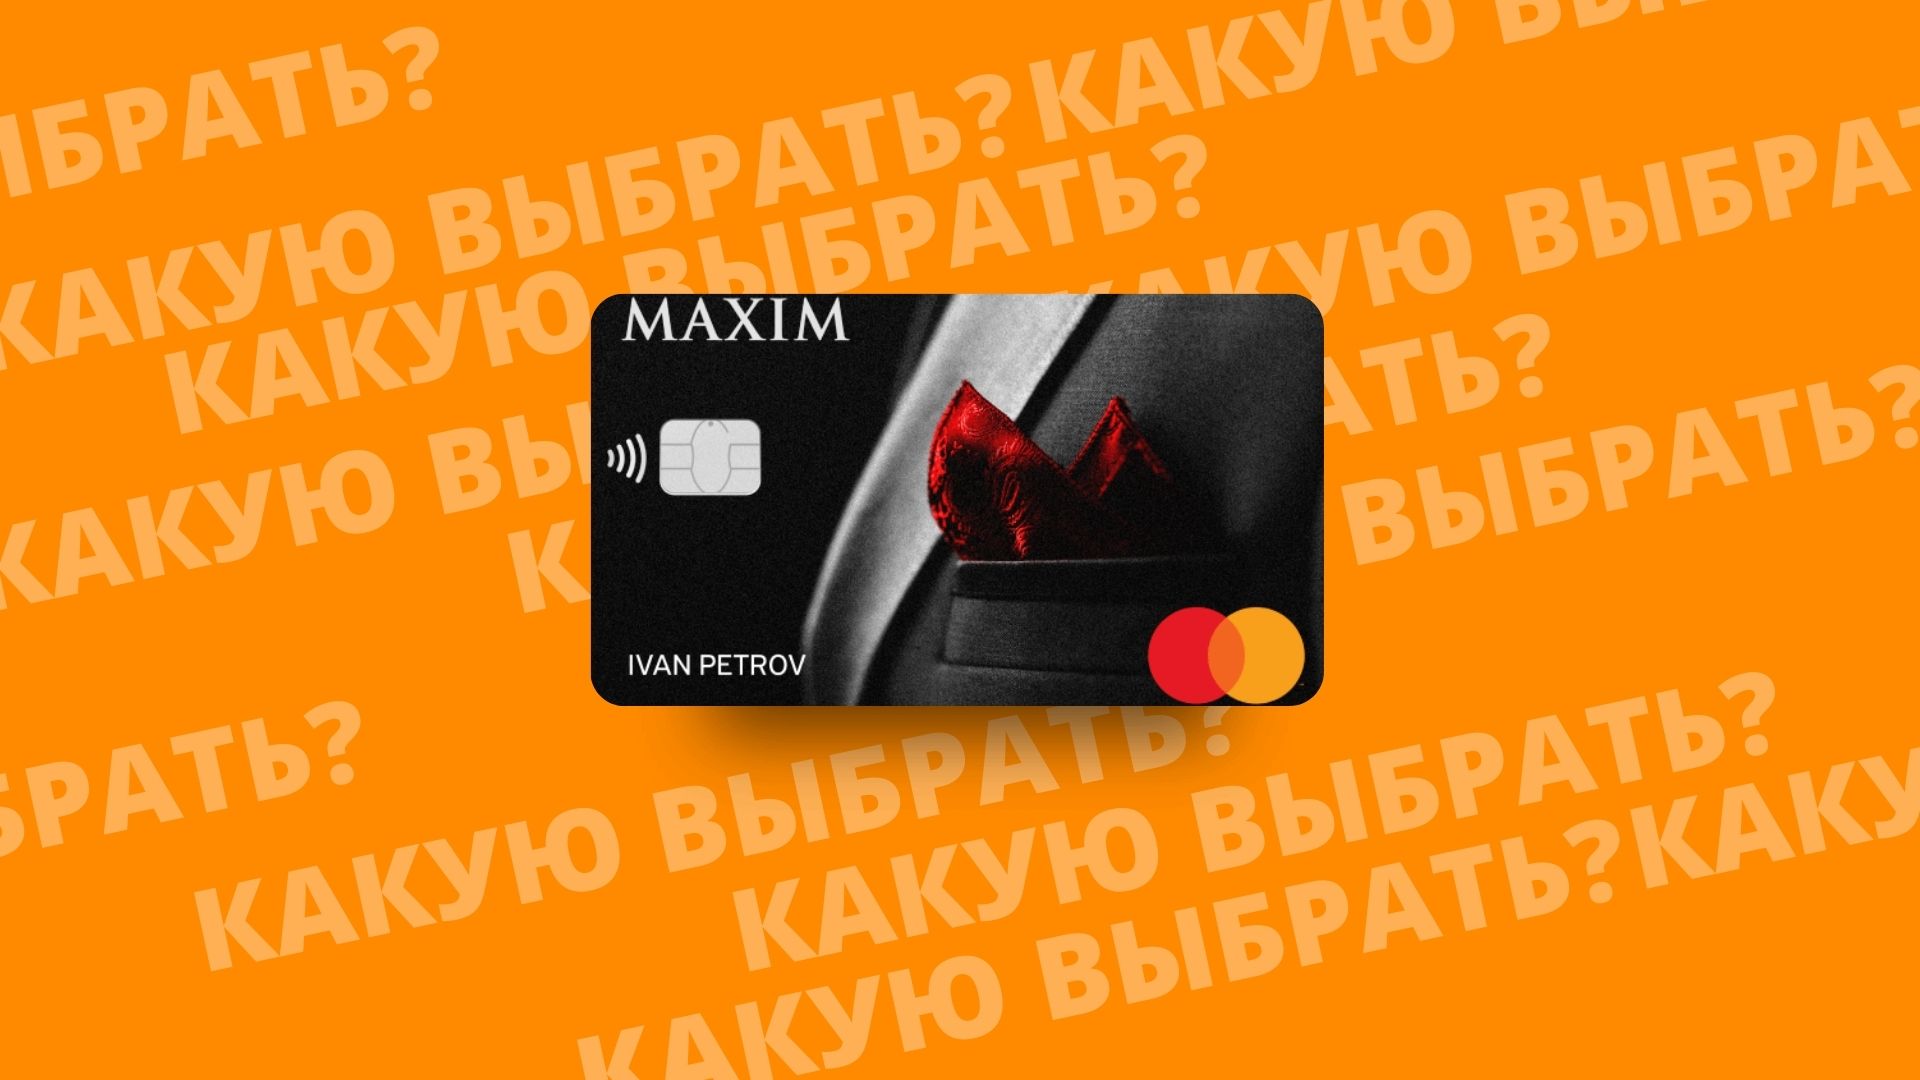 MAXIM кэшбэк дебетовая карта банка Тинькофф. Почему стоит выбрать